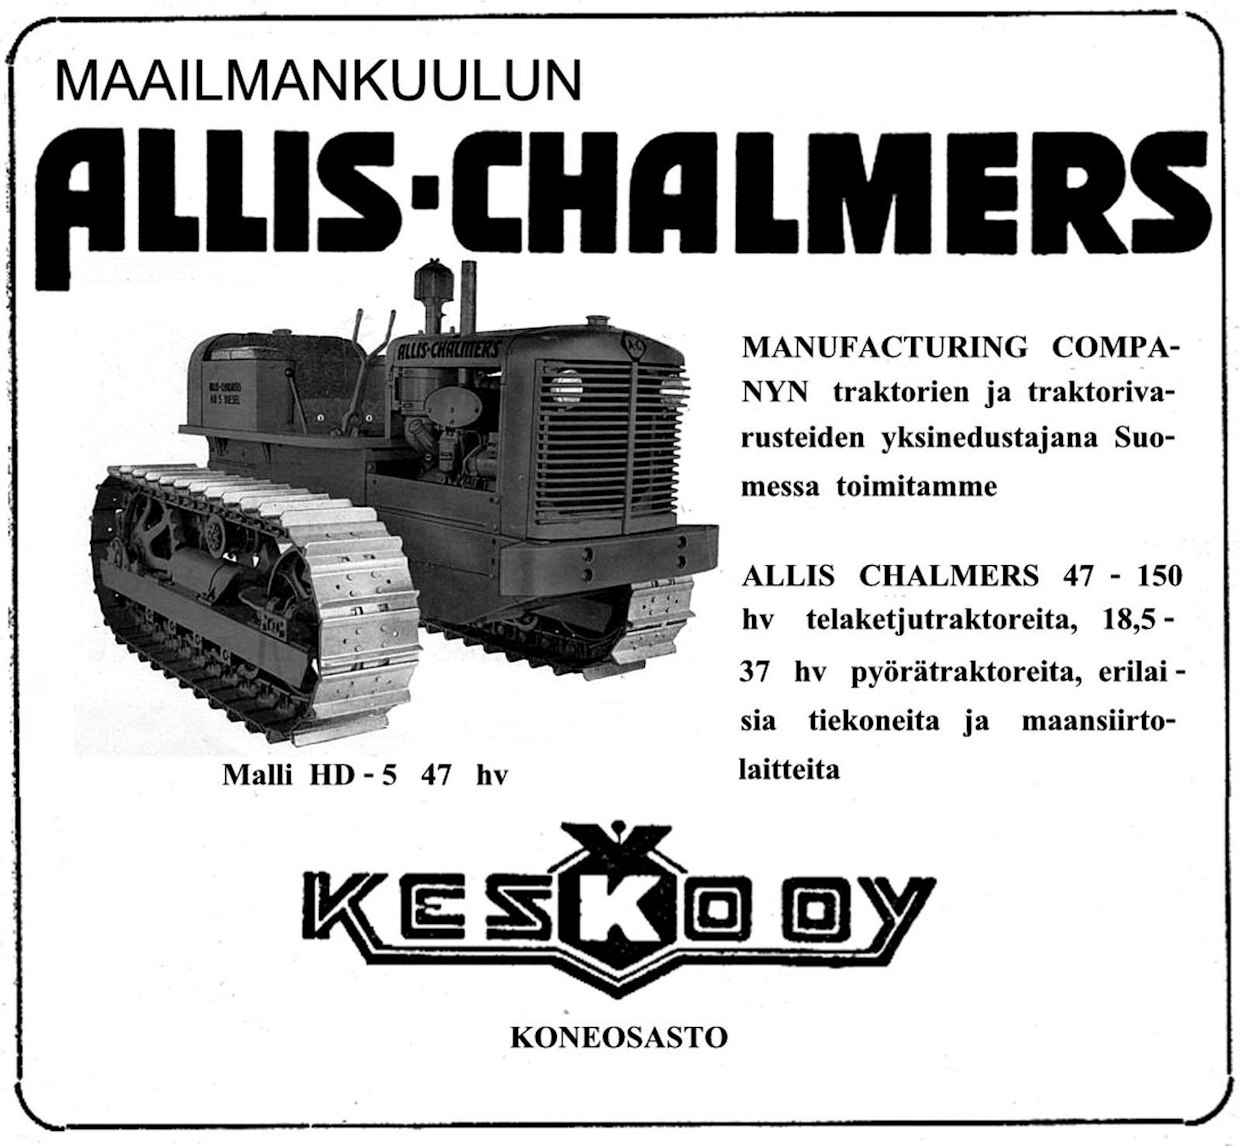 Allis-Chalmersin vuonna 1940 esittelemä telatraktorisarja uudistui kuusi vuotta myöhemmin, jolloin malliston pienimmäksi koneeksi tuli 47-hevosvoimainen ja 5-tonninen HD5. Merkin maahantuojaksi oli sotien jälkeen vaihtunut Kesko Oy, joka toi vuosina 1947–55 Suomeen yhteensä 52 HD5-traktoria.